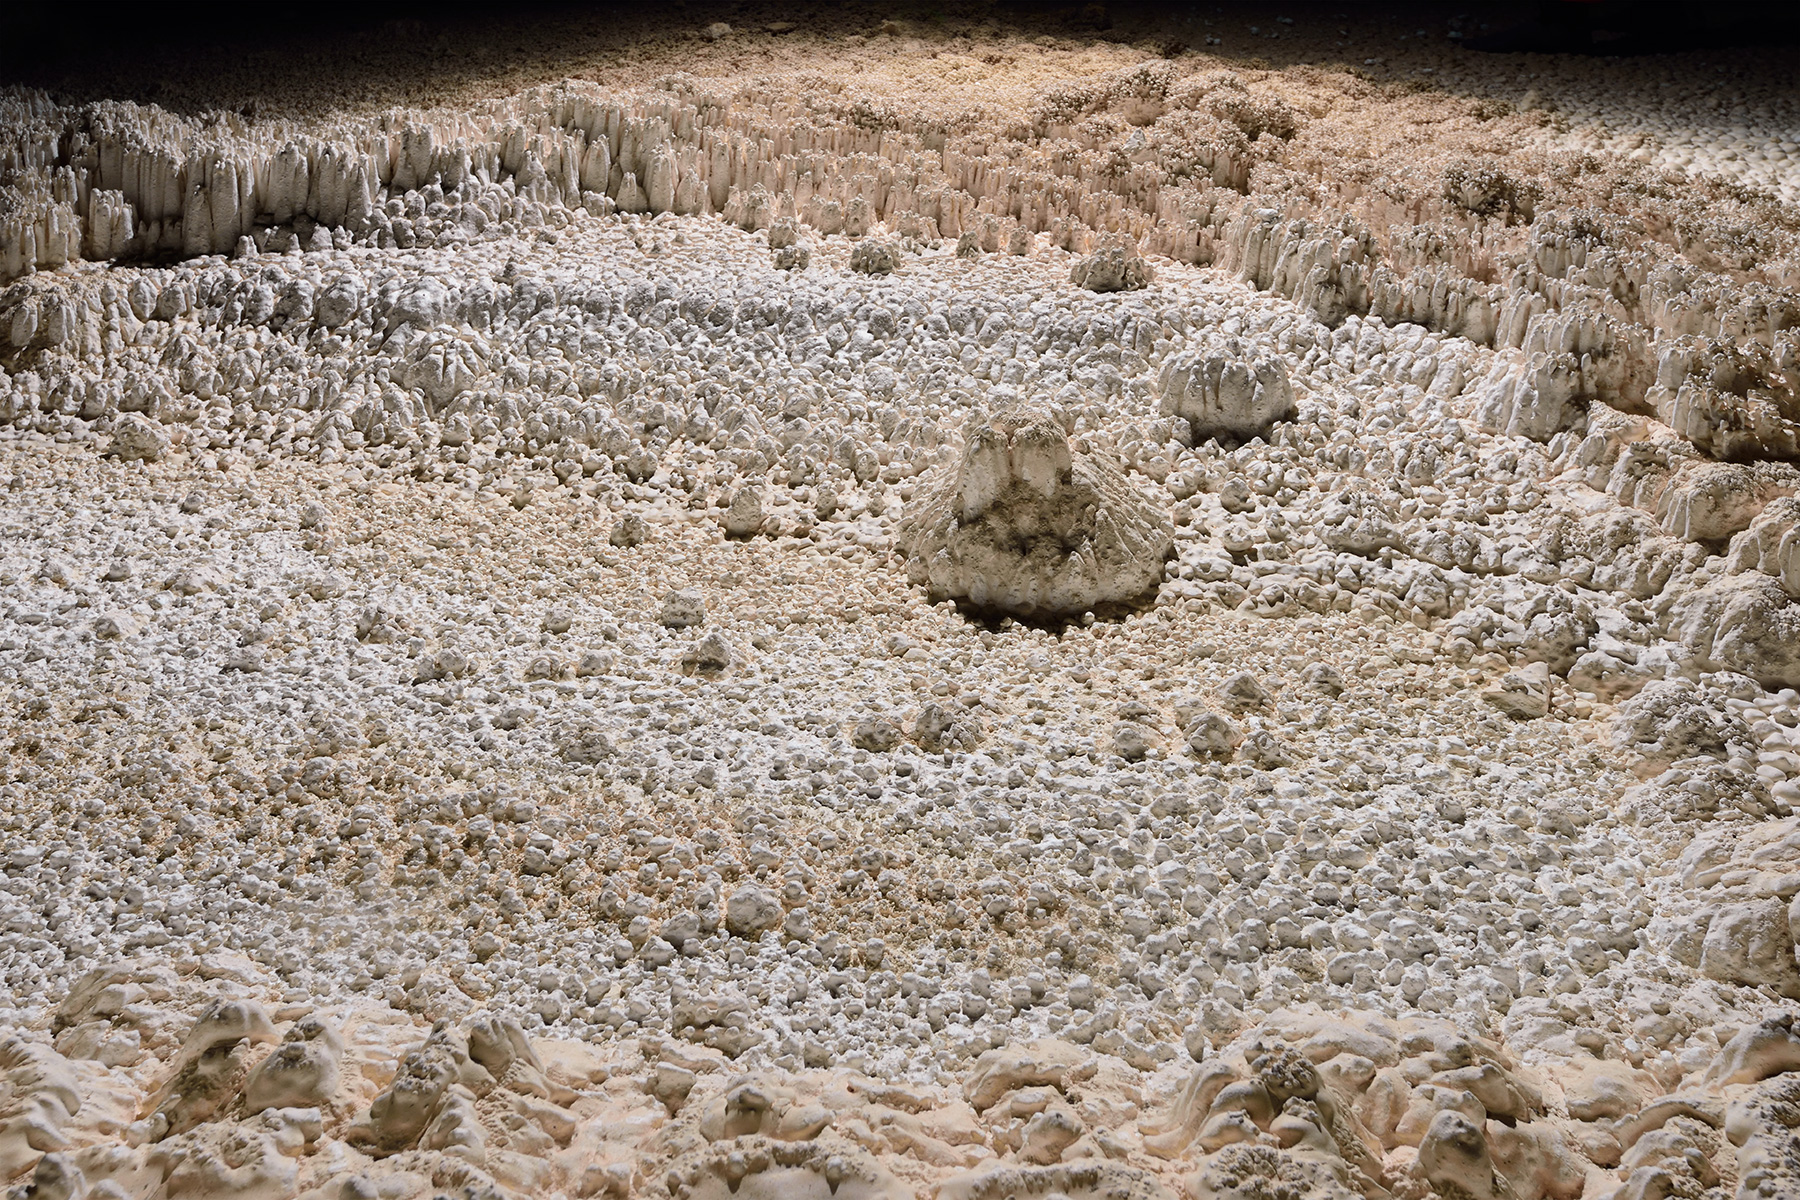 Lapa do Janelao (Itacarambi, Minas Gerais) - Formation de perles des cavernes par érosion d'une couche tendre de calcaires.